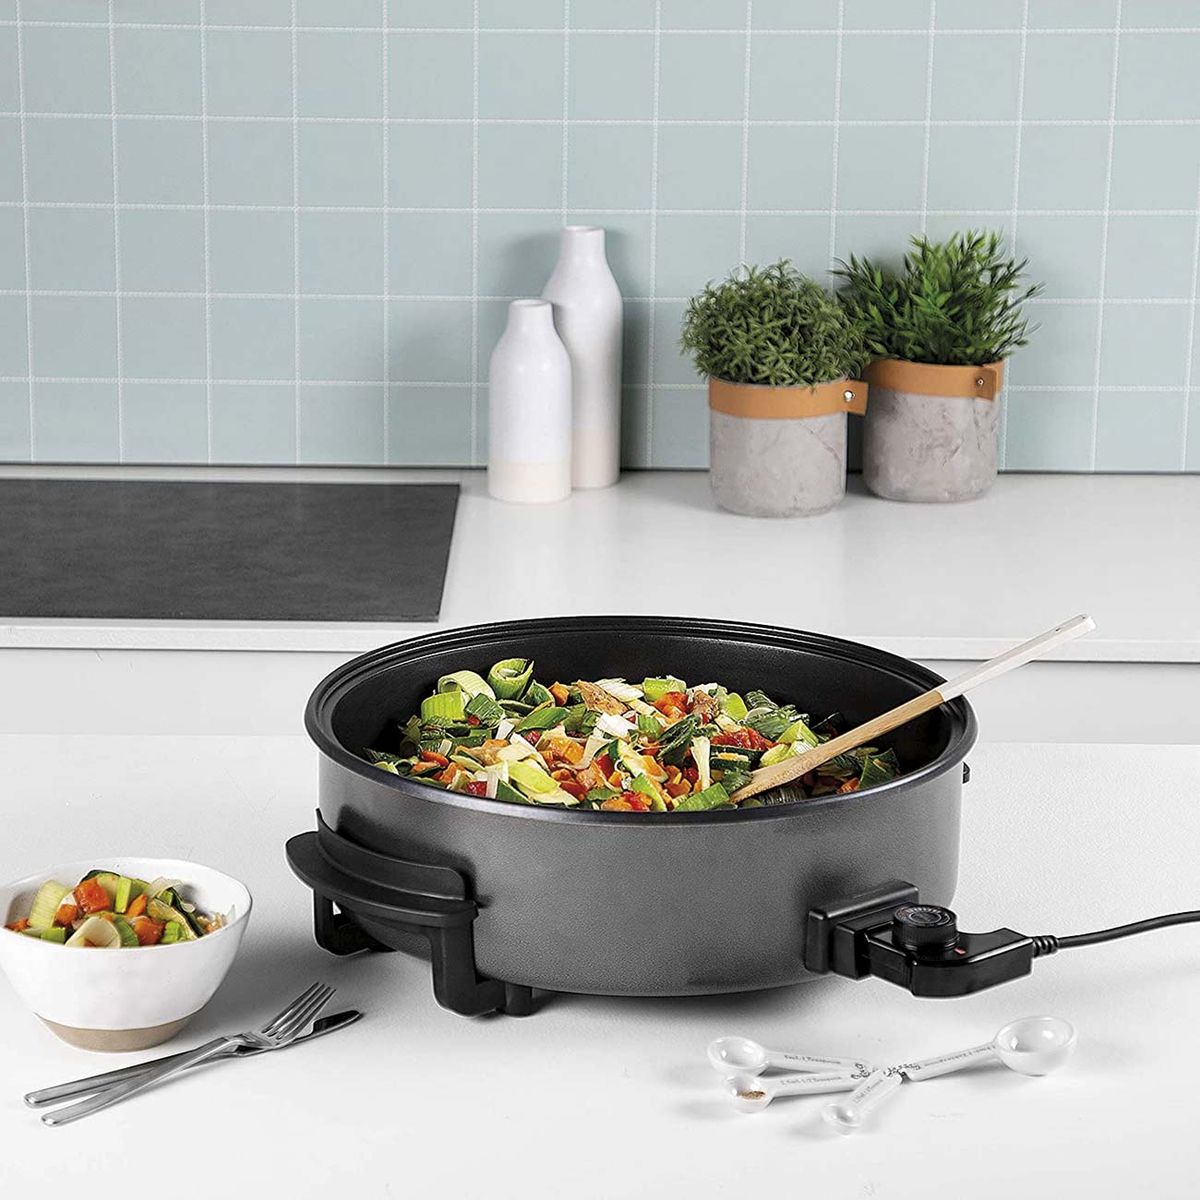 Las sartenes tipo wok mejor valoradas para preparar las verduras